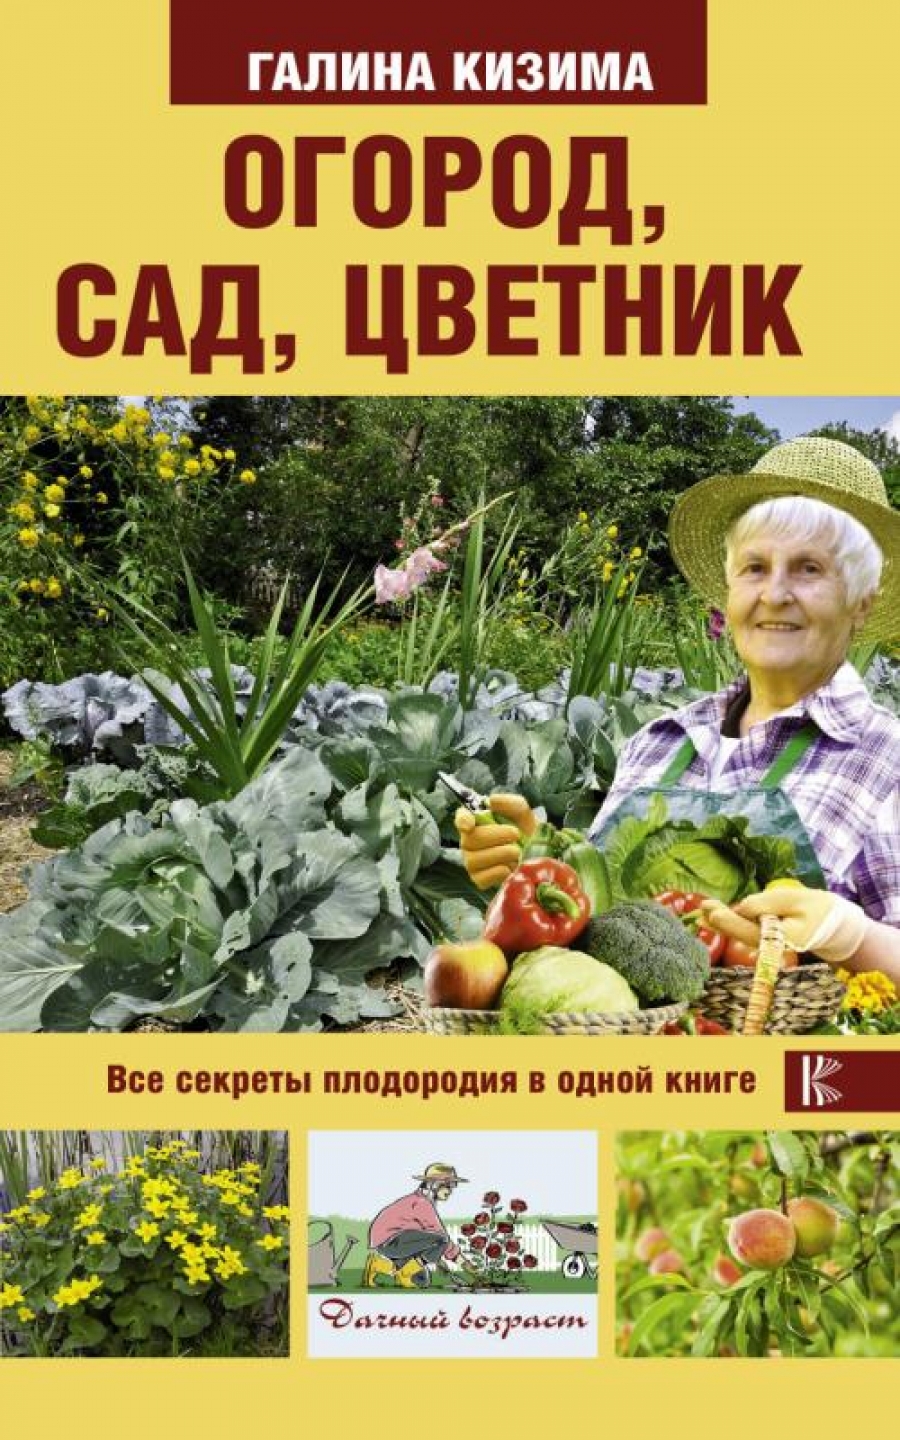 Кизима Г.А. Огород, сад, цветник. Все секреты плодородия в одной книге 